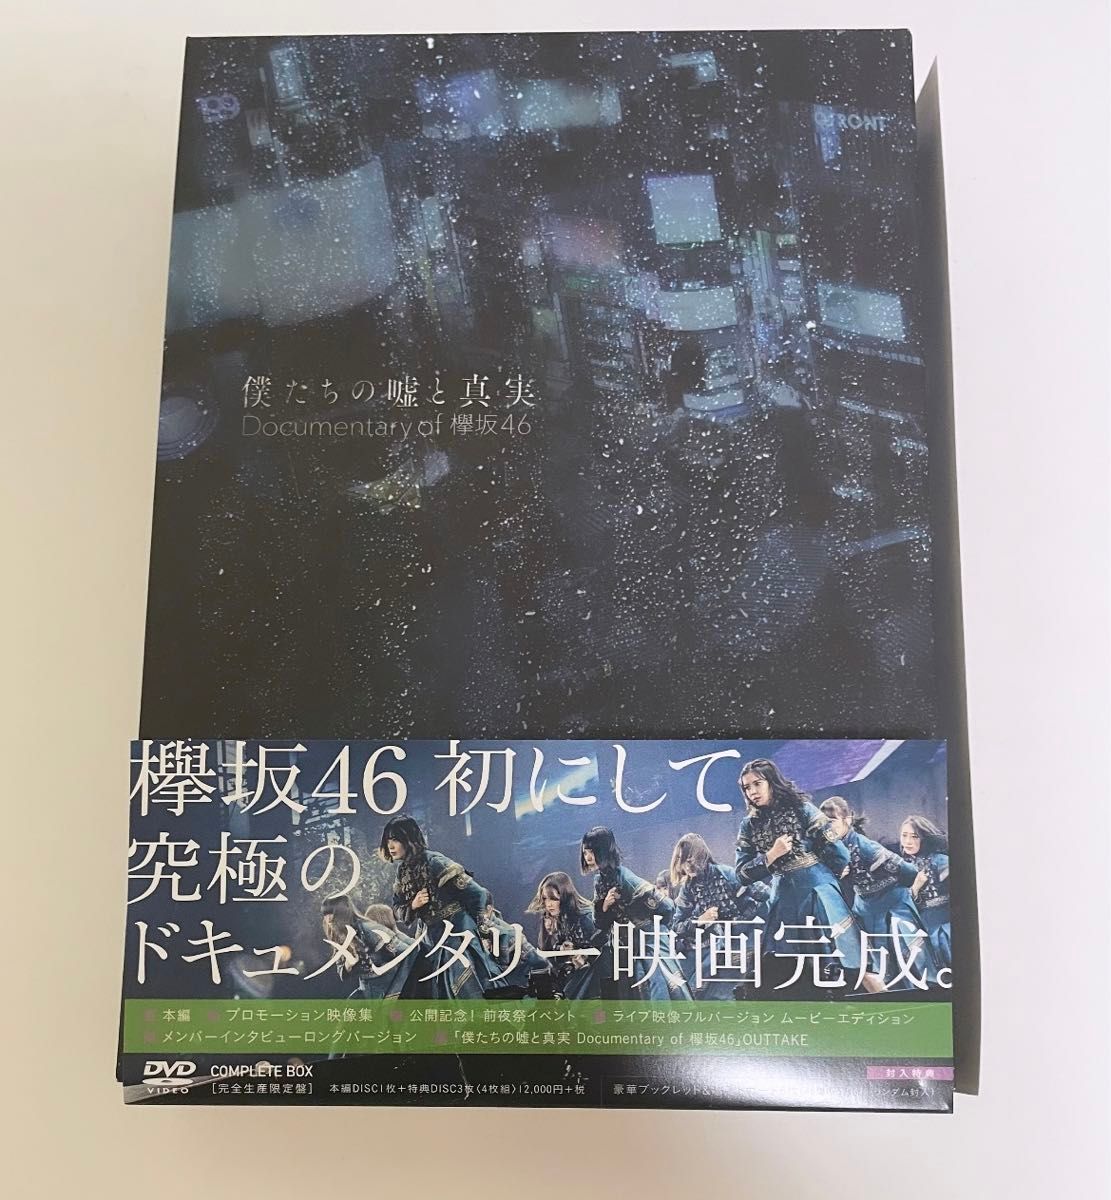 完全生産限定盤DVDコンプリートBOX （ハ取） 欅坂46 DVD/僕たちの嘘と真実 Documentary of 